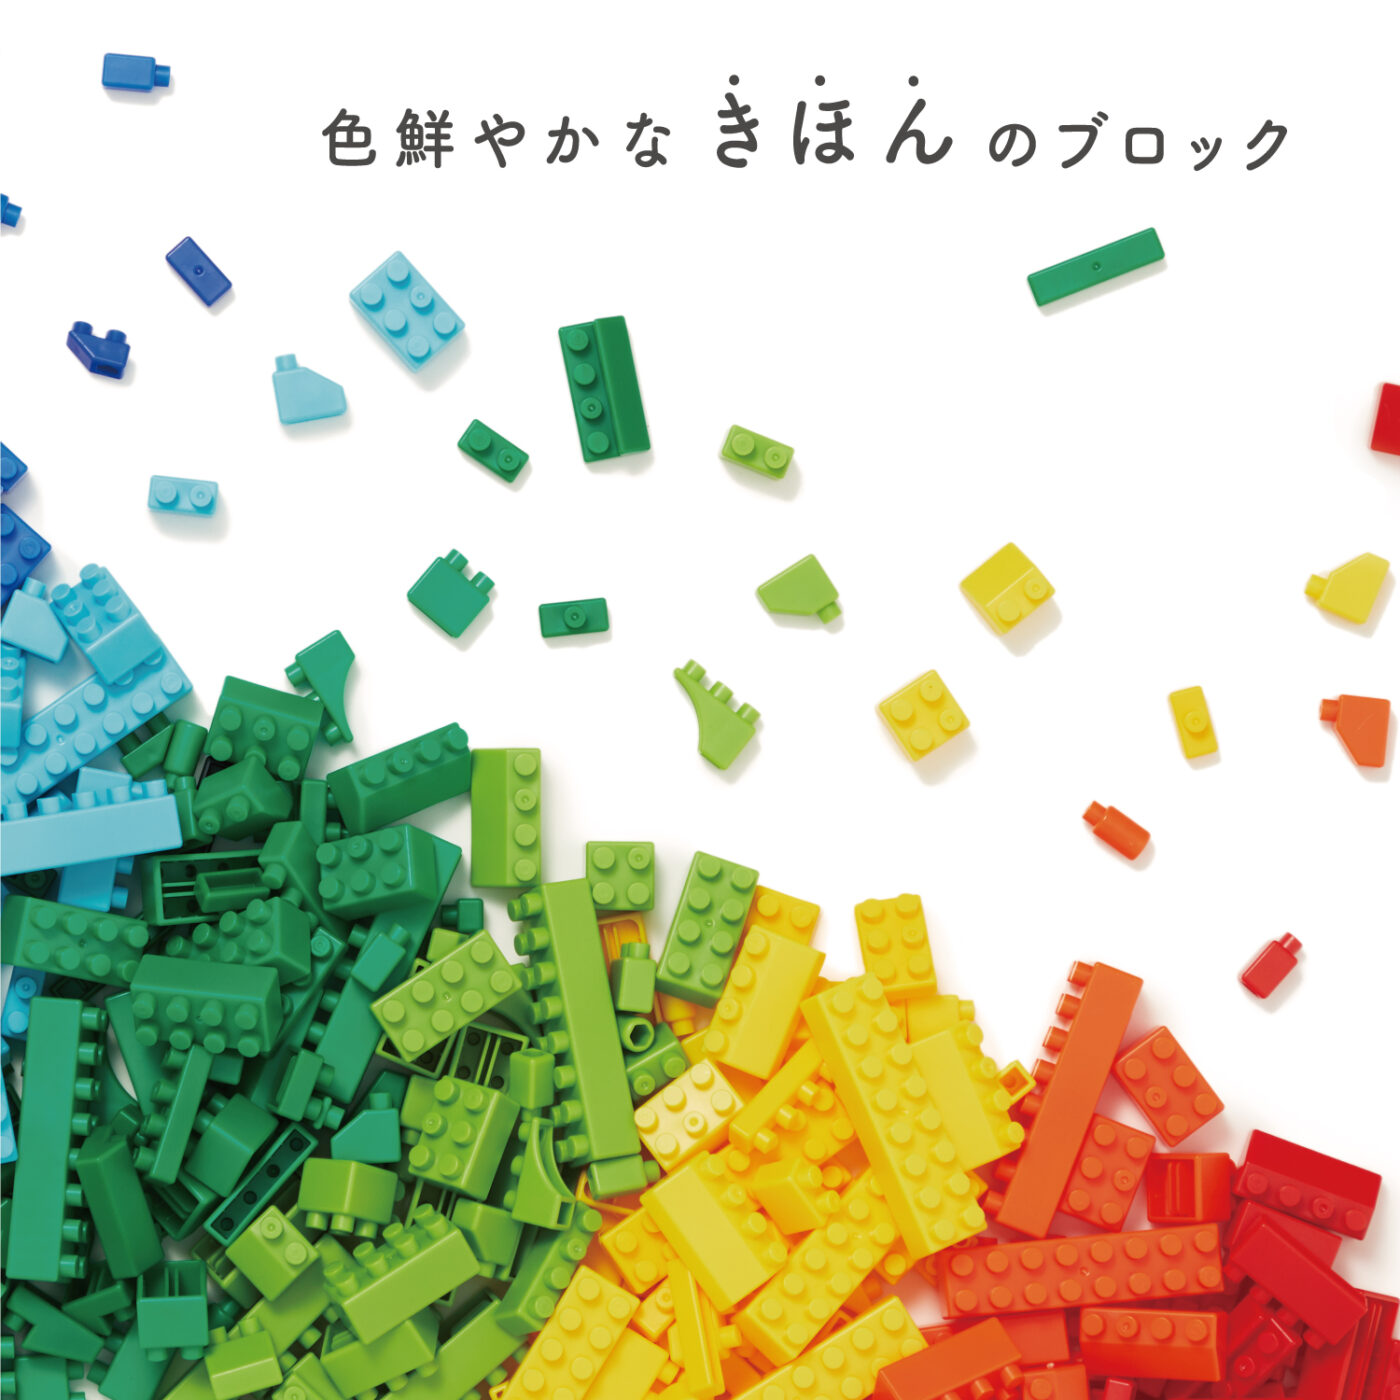 ダイヤブロック KIHONIRO(キホンイロ) Sの商品画像4